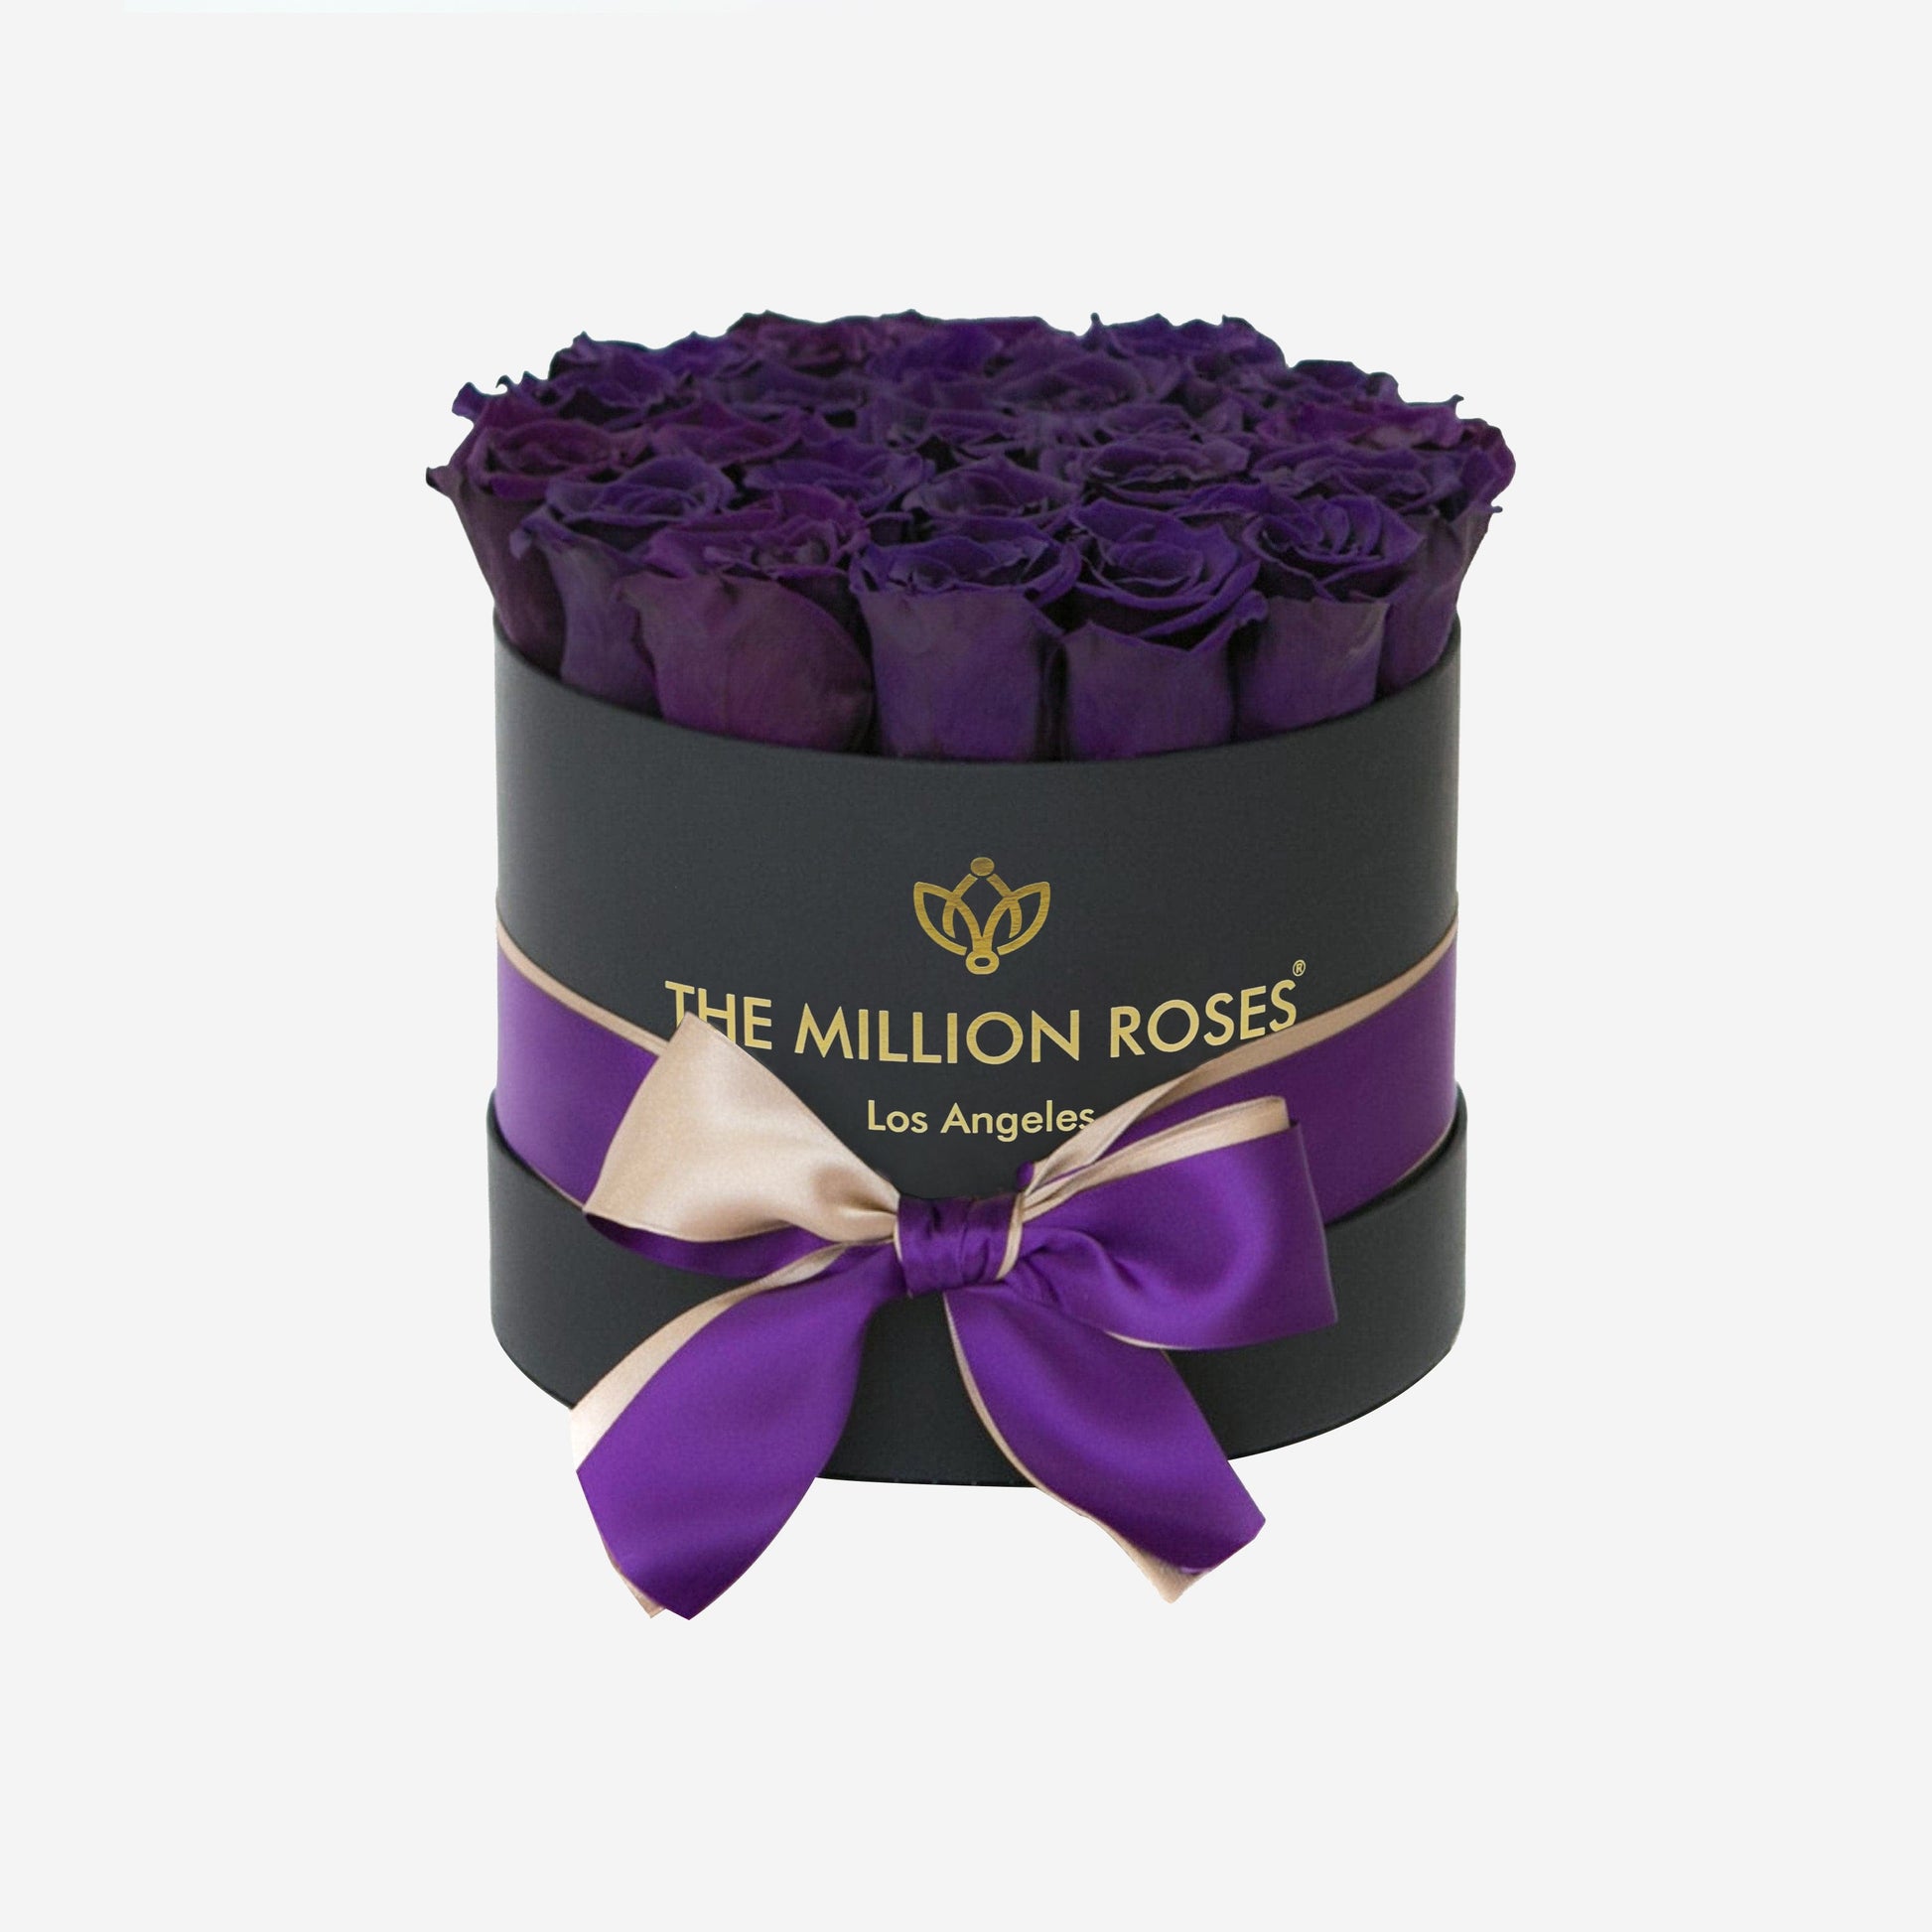 bouquet of dark purple roses